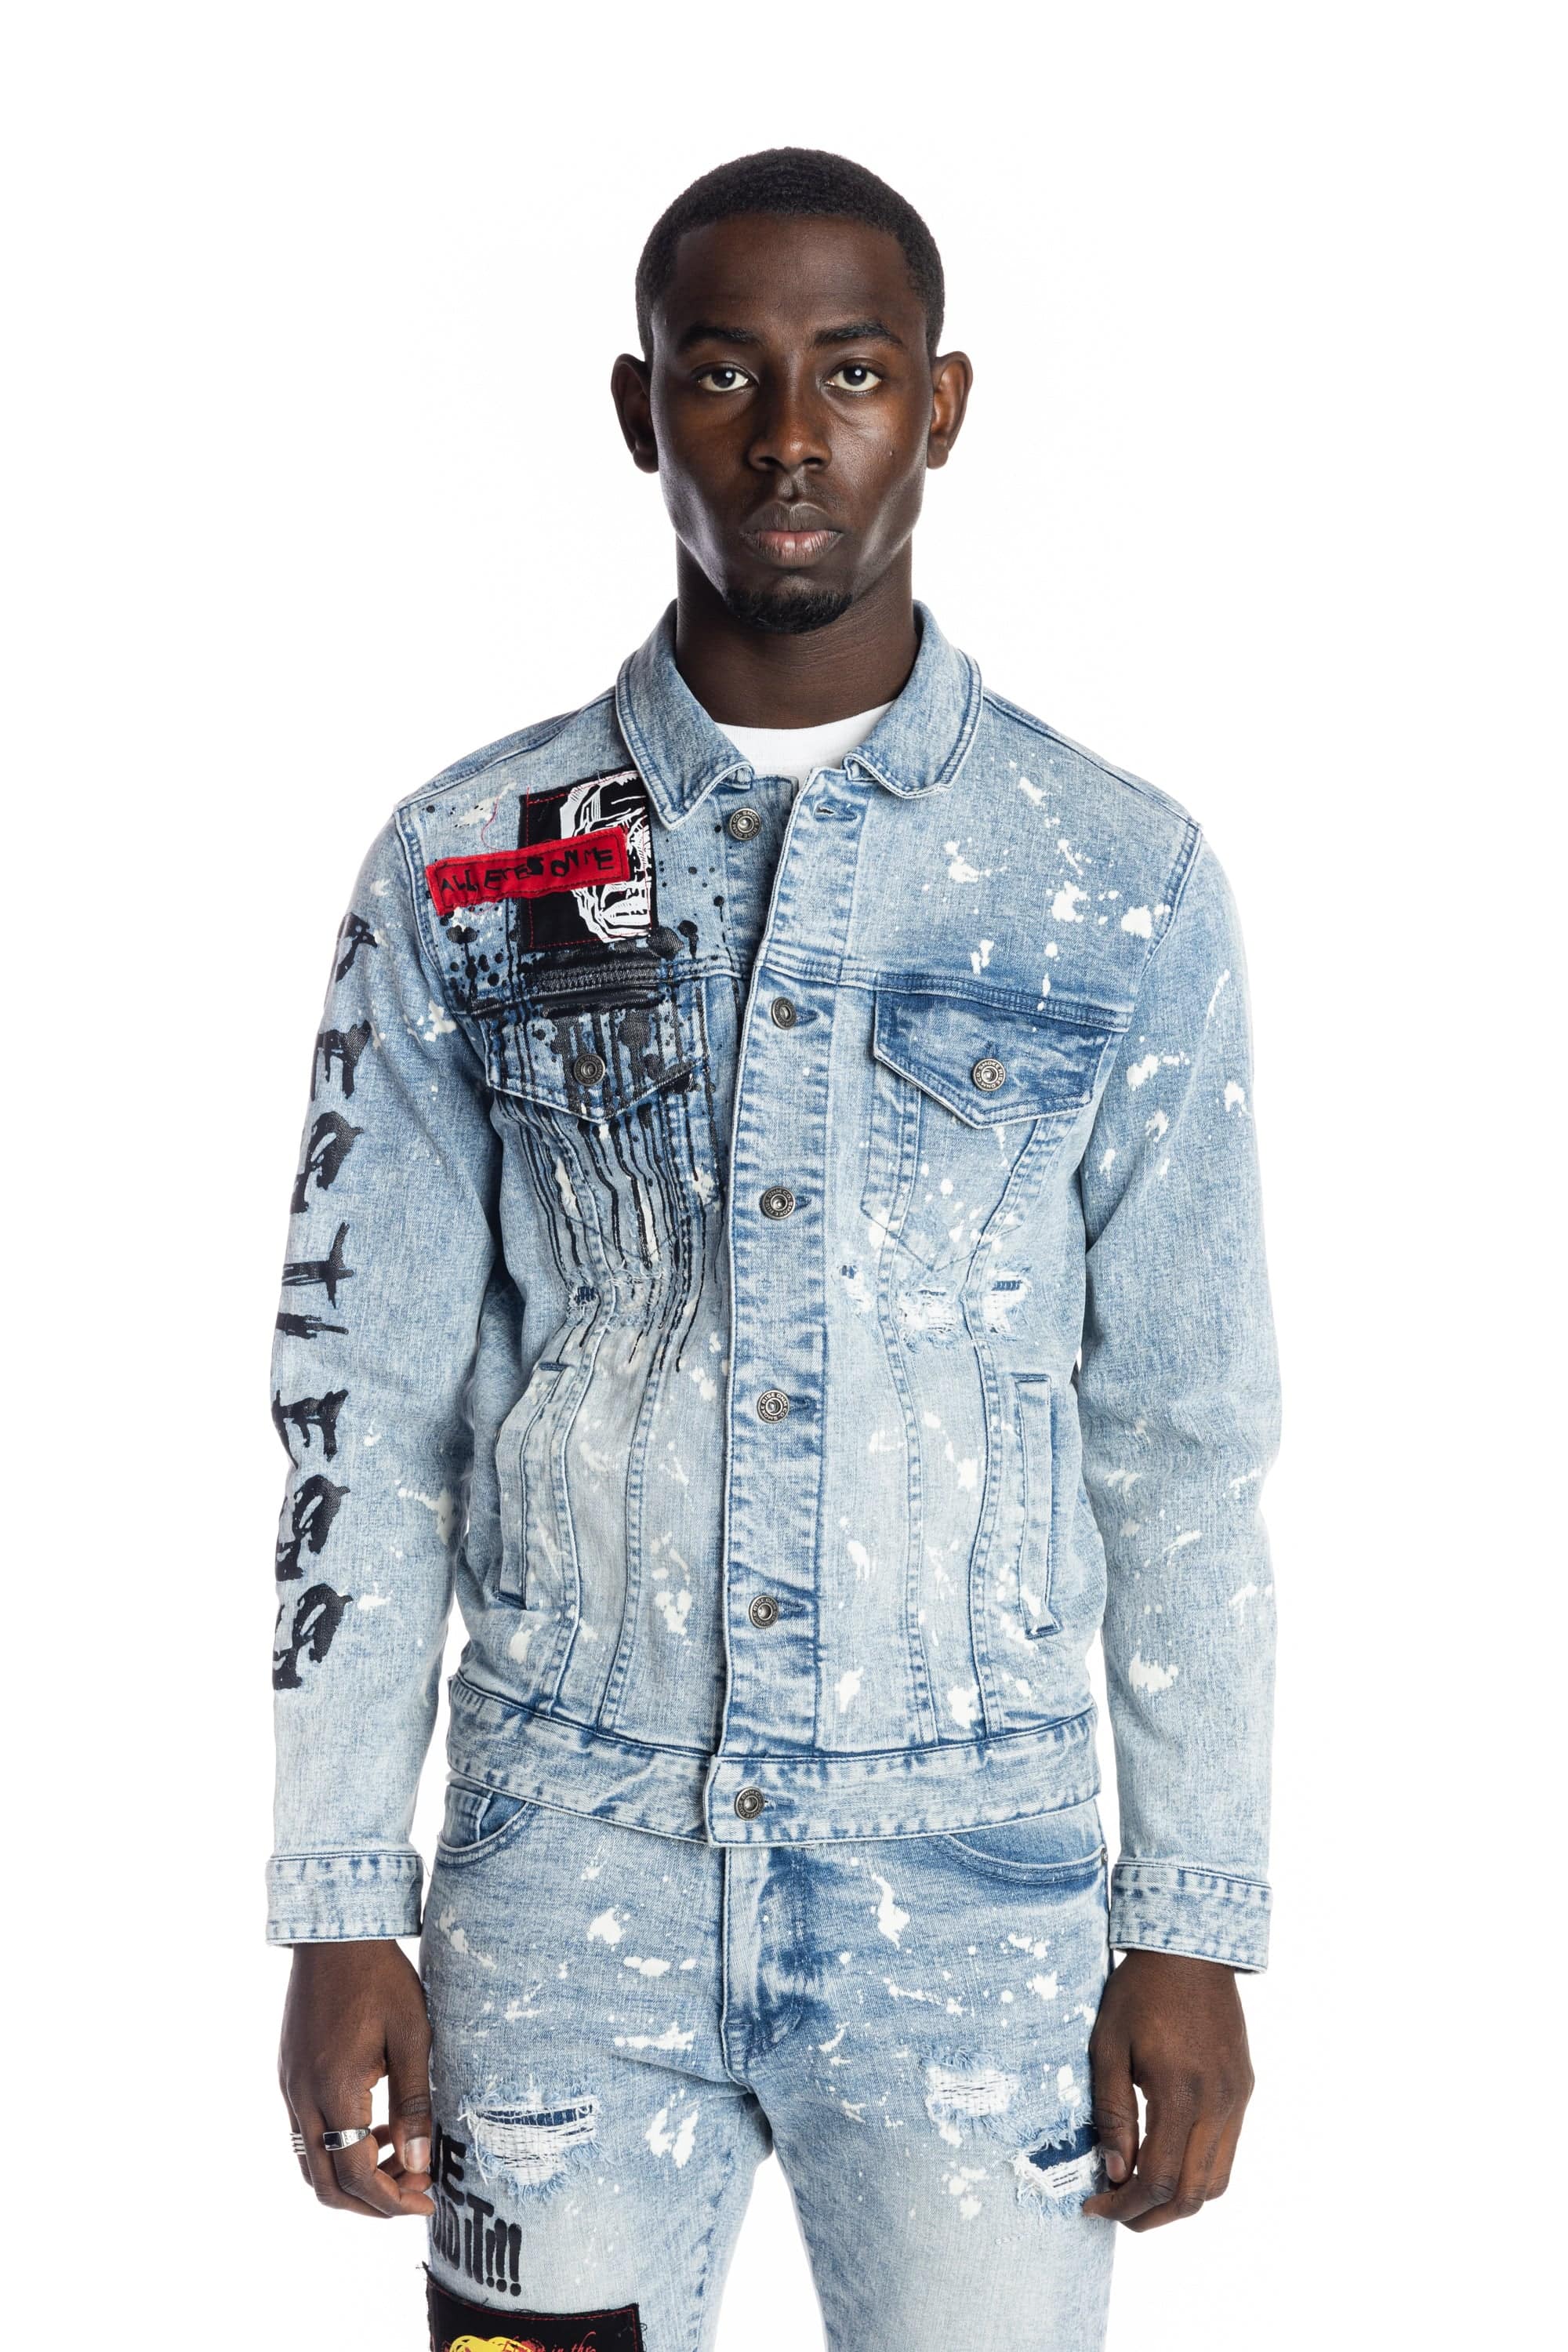 Graphic Patched Fashion Denim Jacket - Mizu Blue